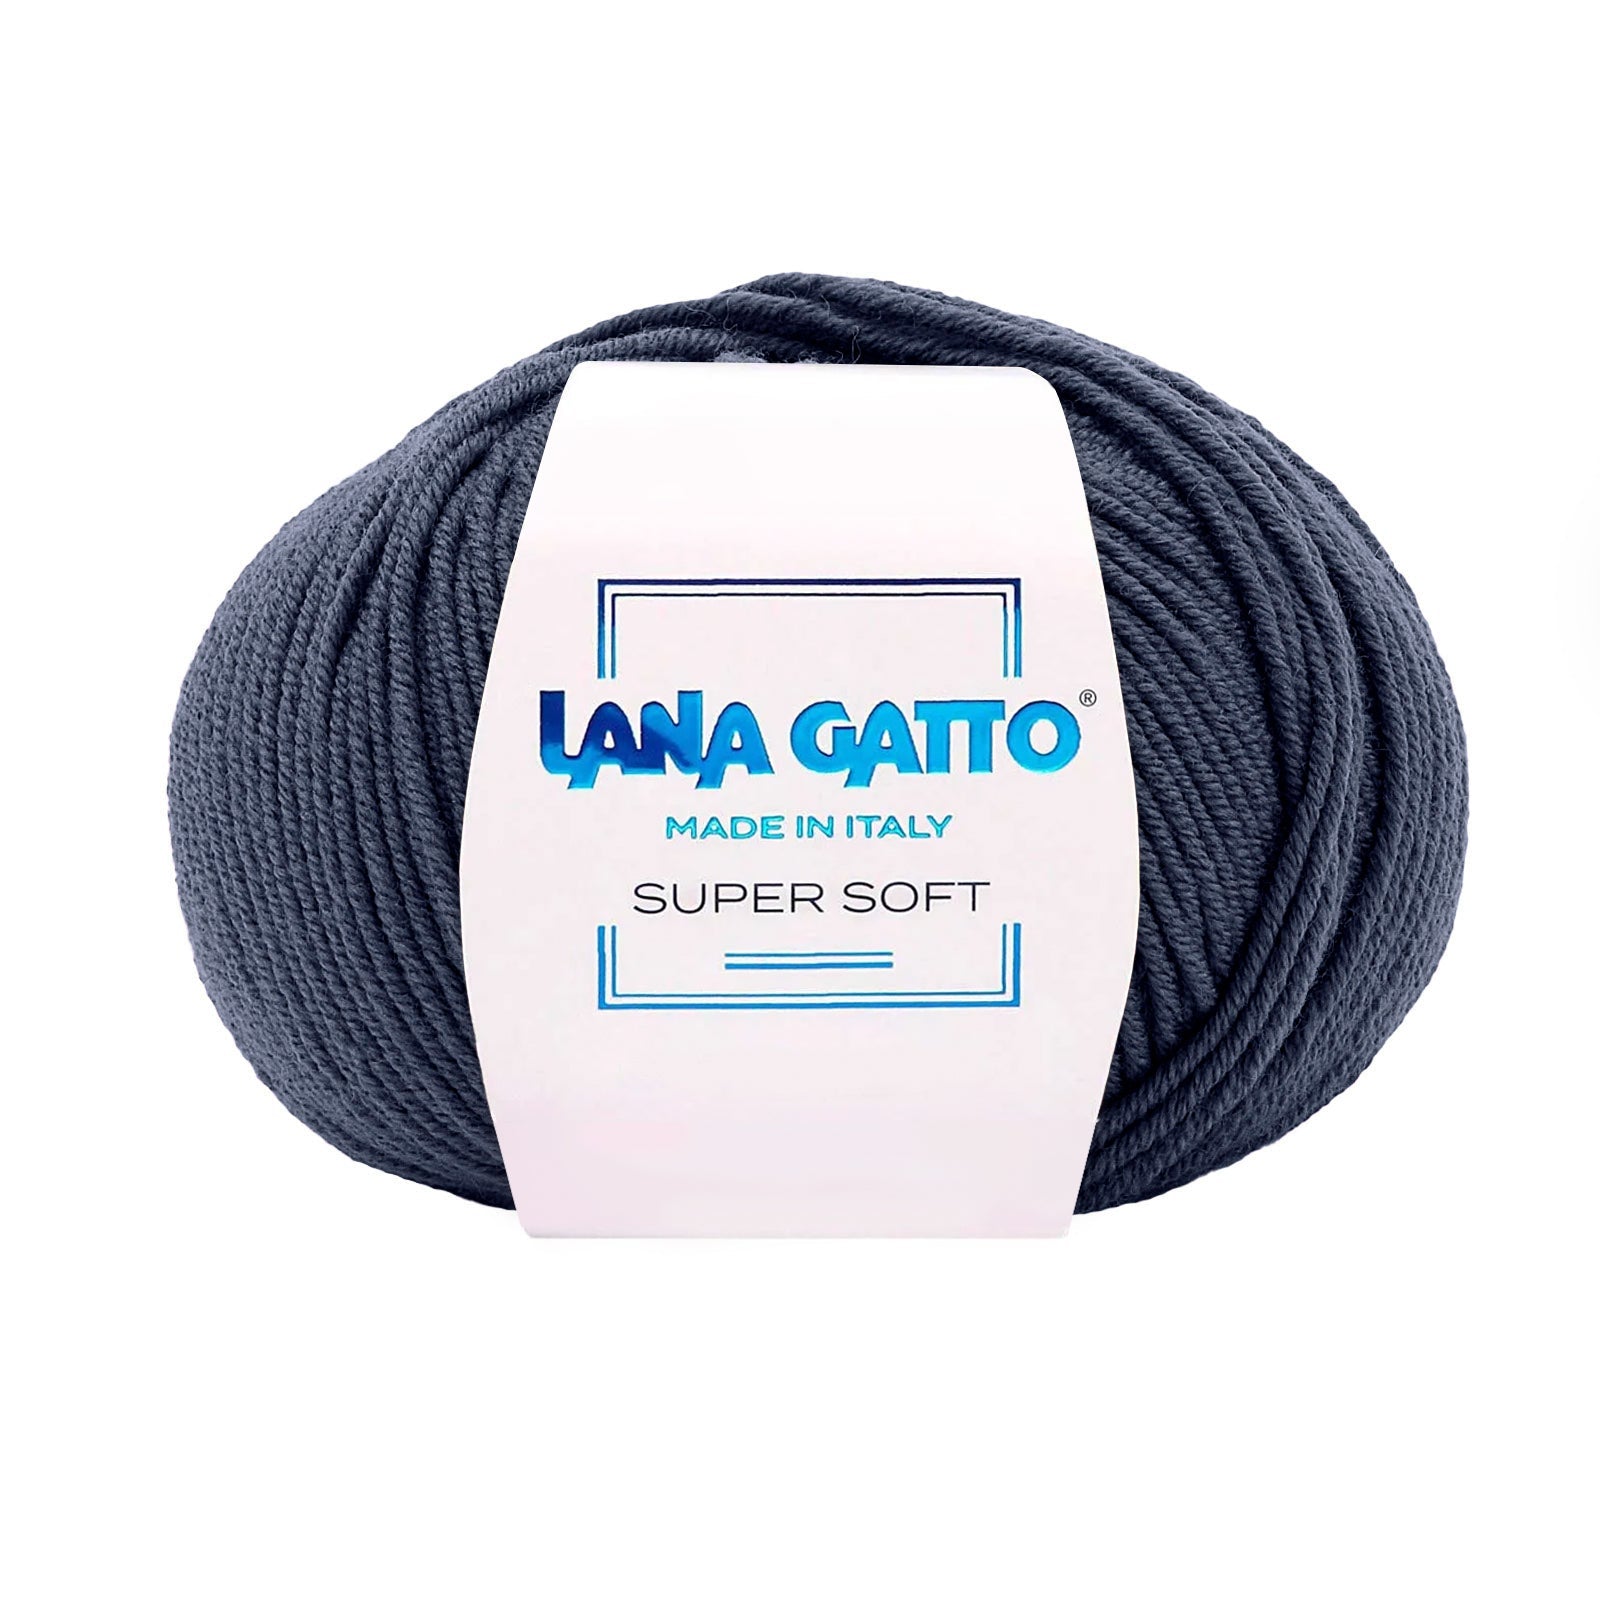 Gomitolo 100% Pura Lana Vergine Merino Extrafine Lana Gatto Linea Super Soft - Tonalità Blu - Blu - 13607 - Gomitolo